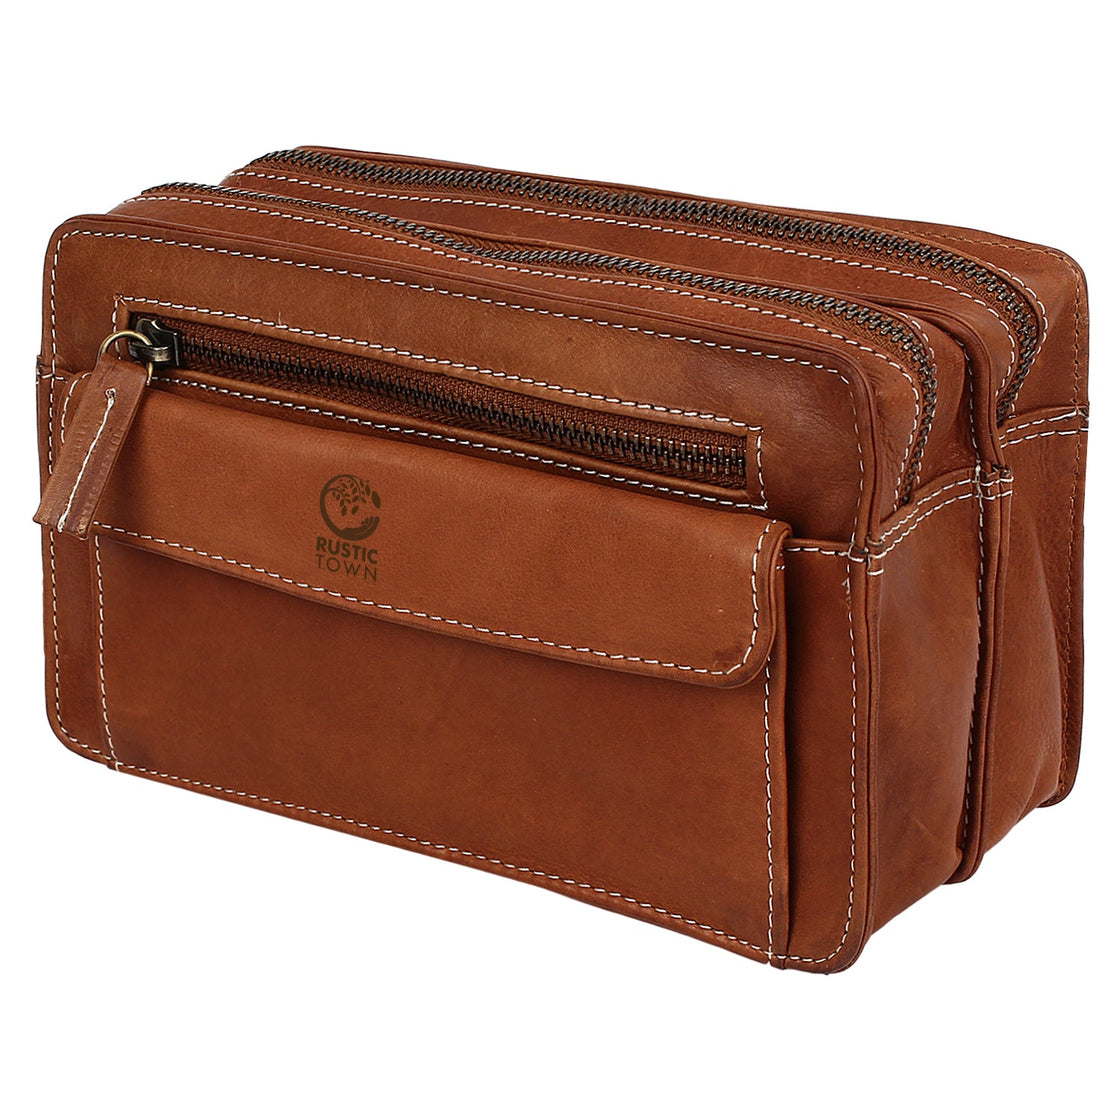 Leather messenger bag for men - Man briefcase - Laptop bag - Man bag ,  handmade man briefcase - Natural Leather Shoulder Bag